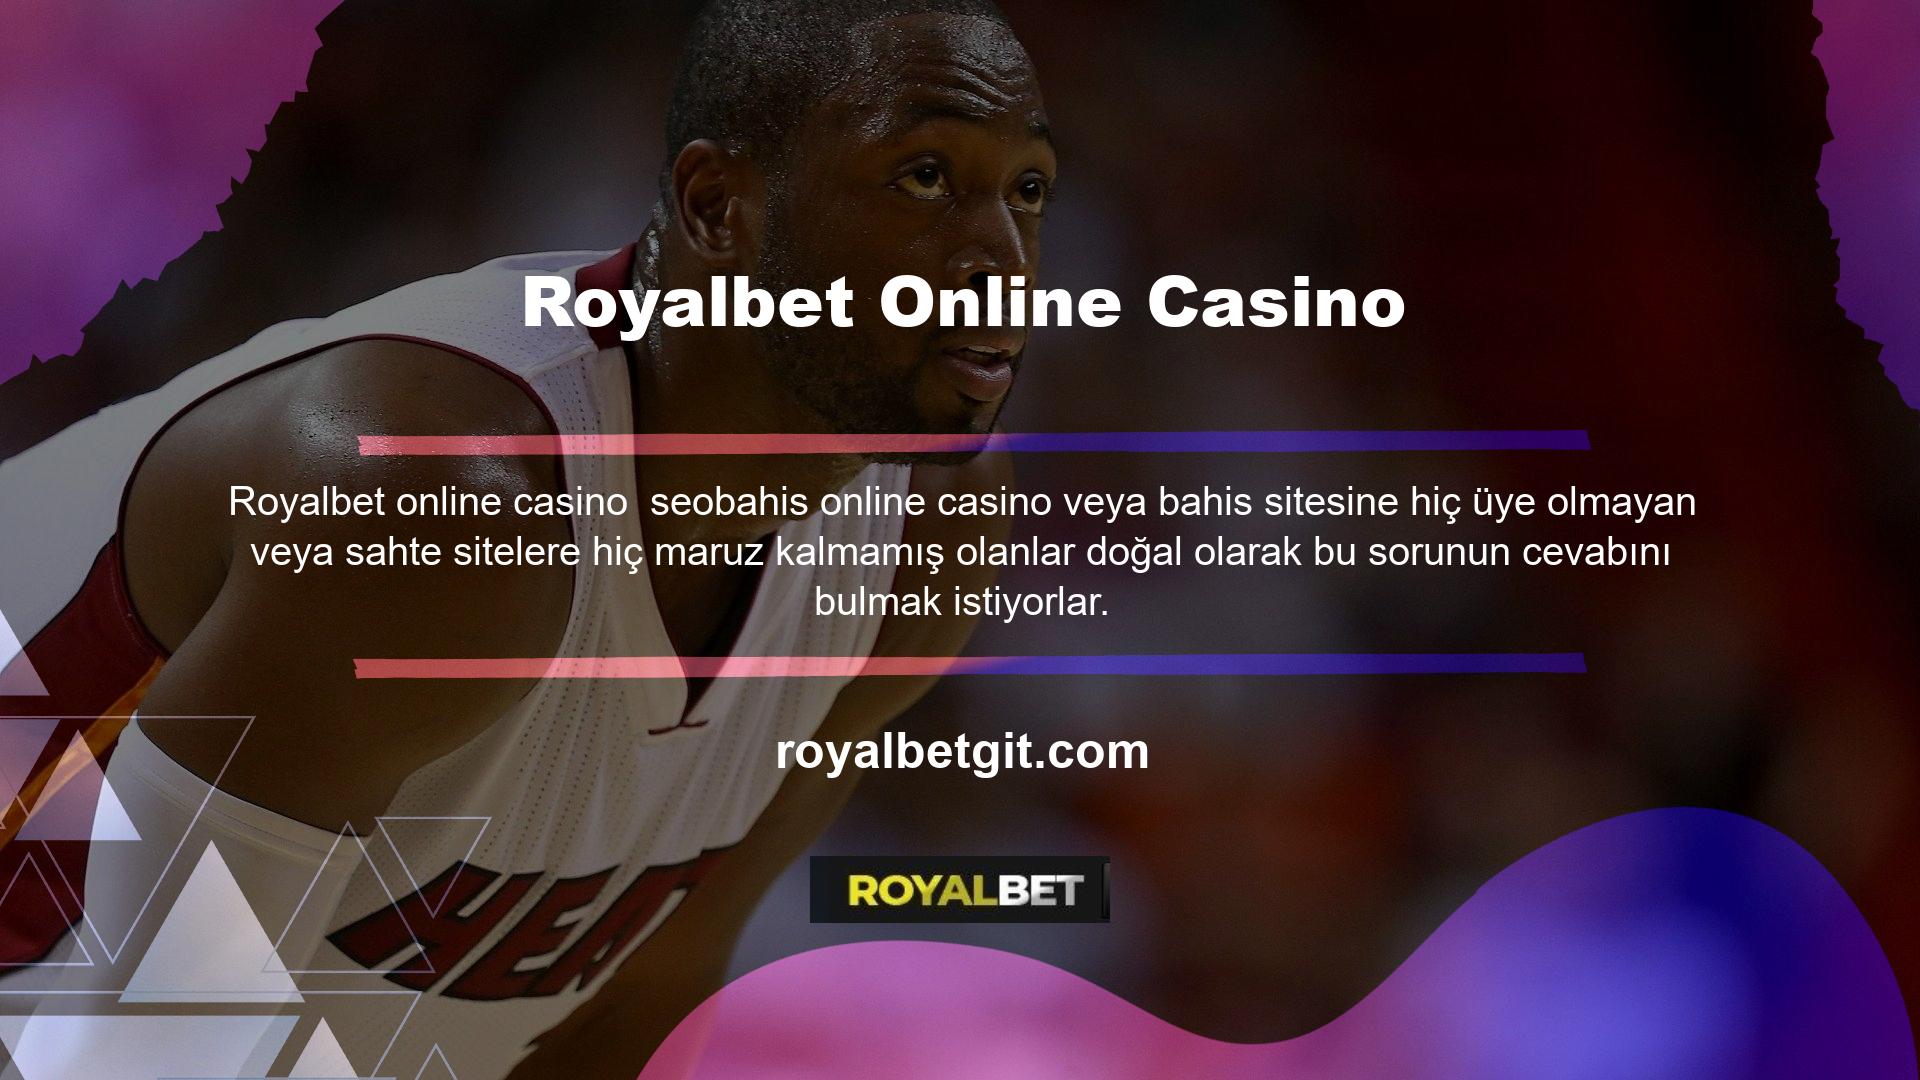 Royalbet sektördeki en güvenilir web sitelerinden biridir